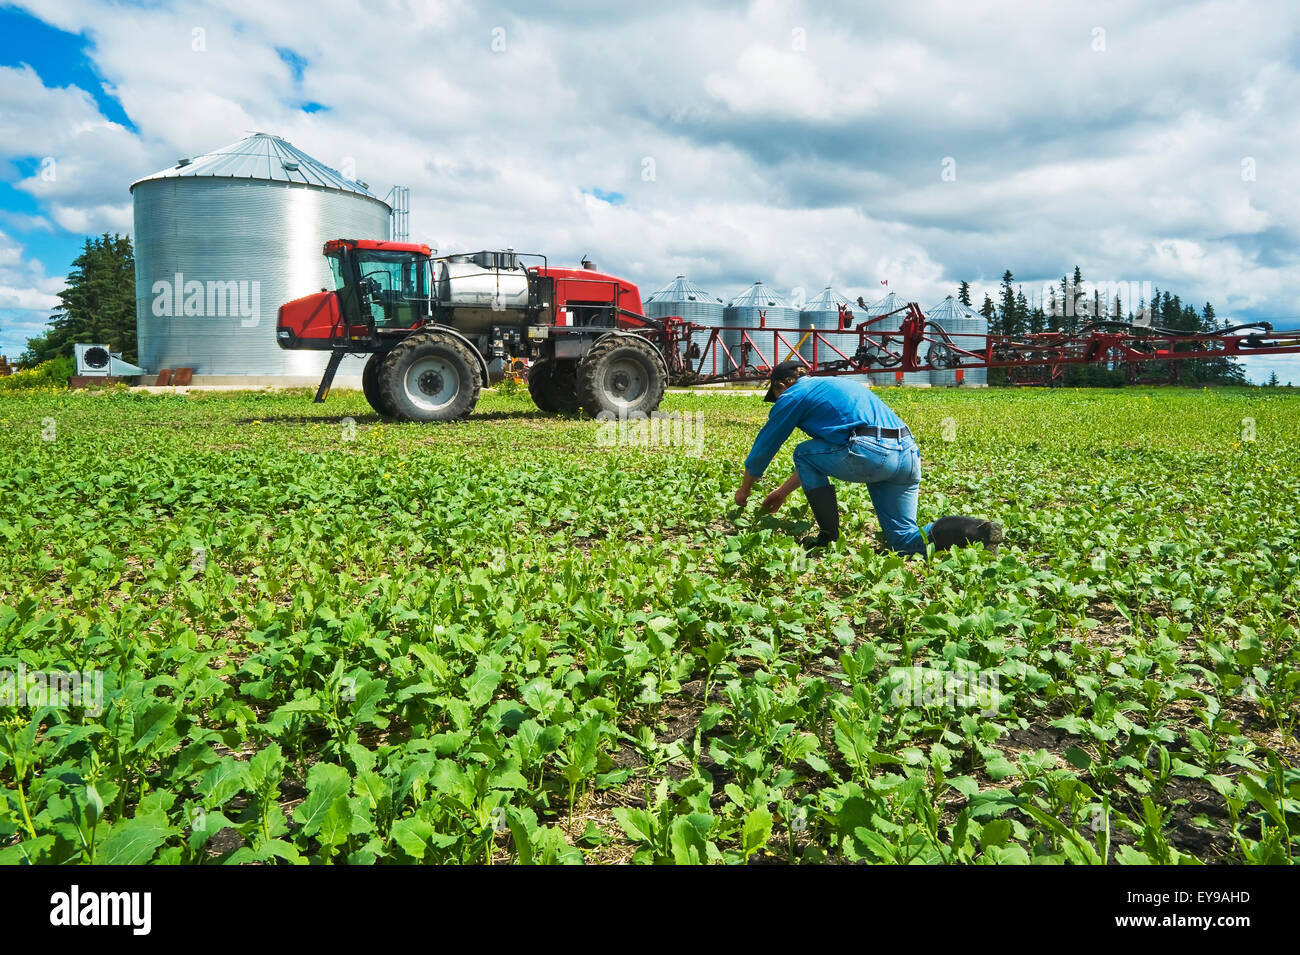 Ein Landwirt Pfadfinder Unkraut in einem frühen Wachstum Raps Feld neben einer hoher Bodenfreiheit Sprayer, in der Nähe von Dugald; Manitoba, Kanada Stockfoto